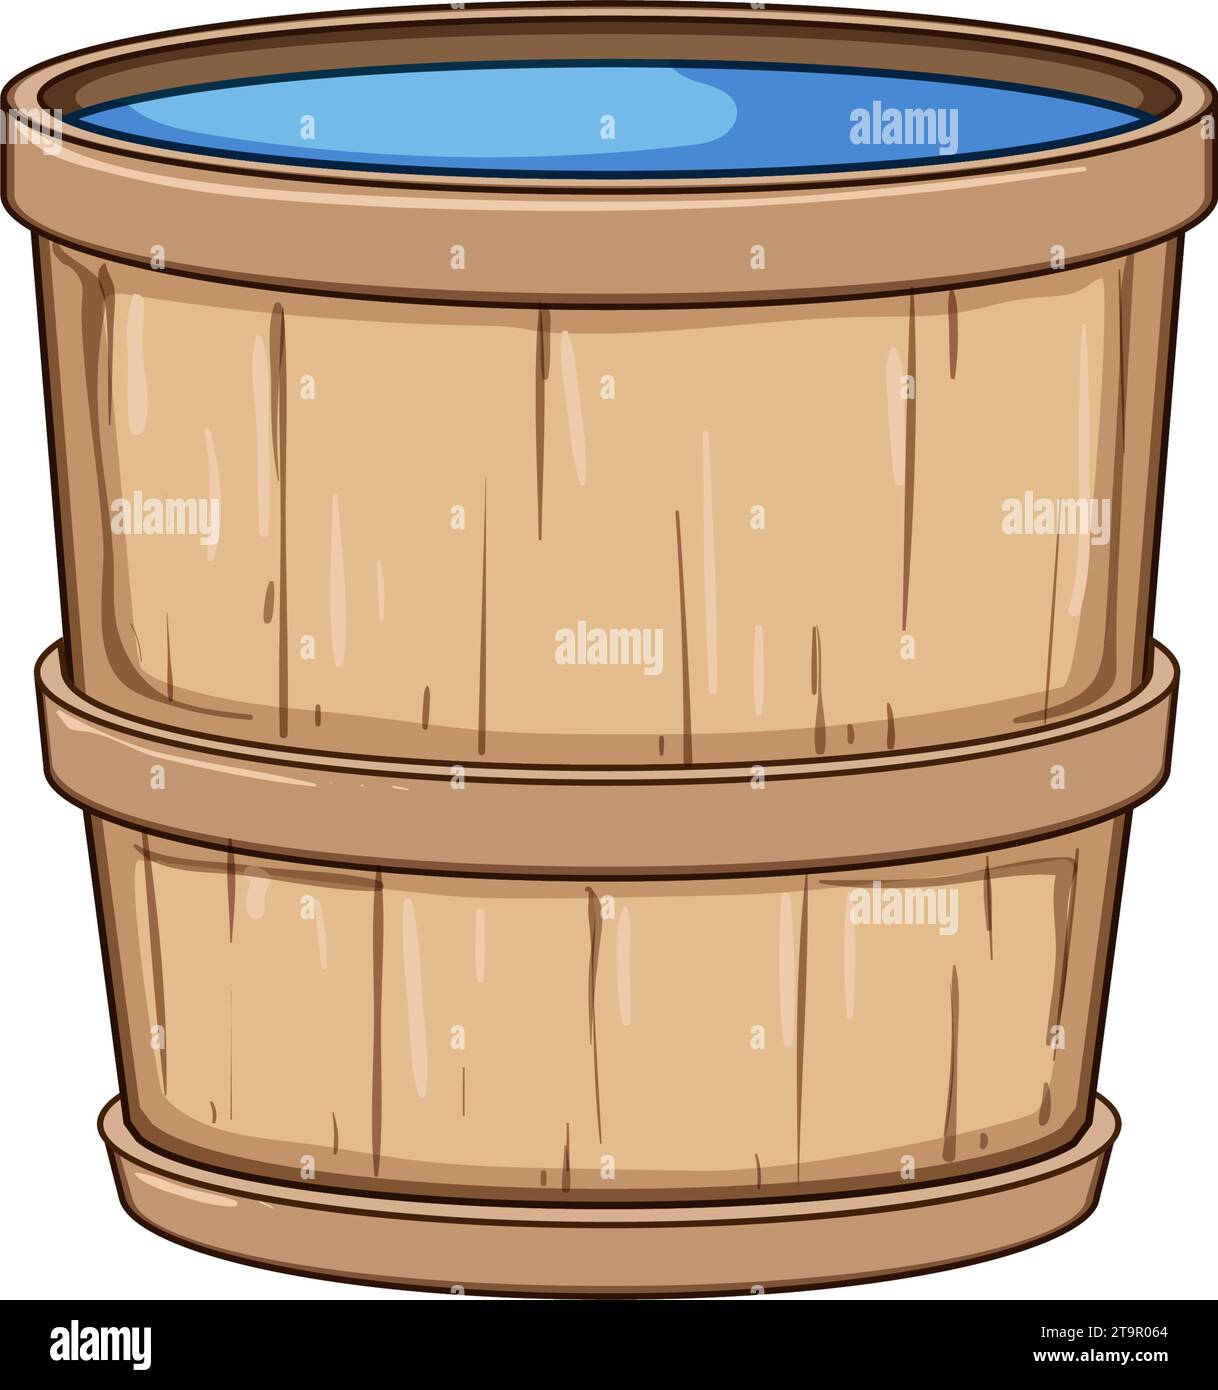 barrel wooden tub cartoon vector illustration Stock Vector